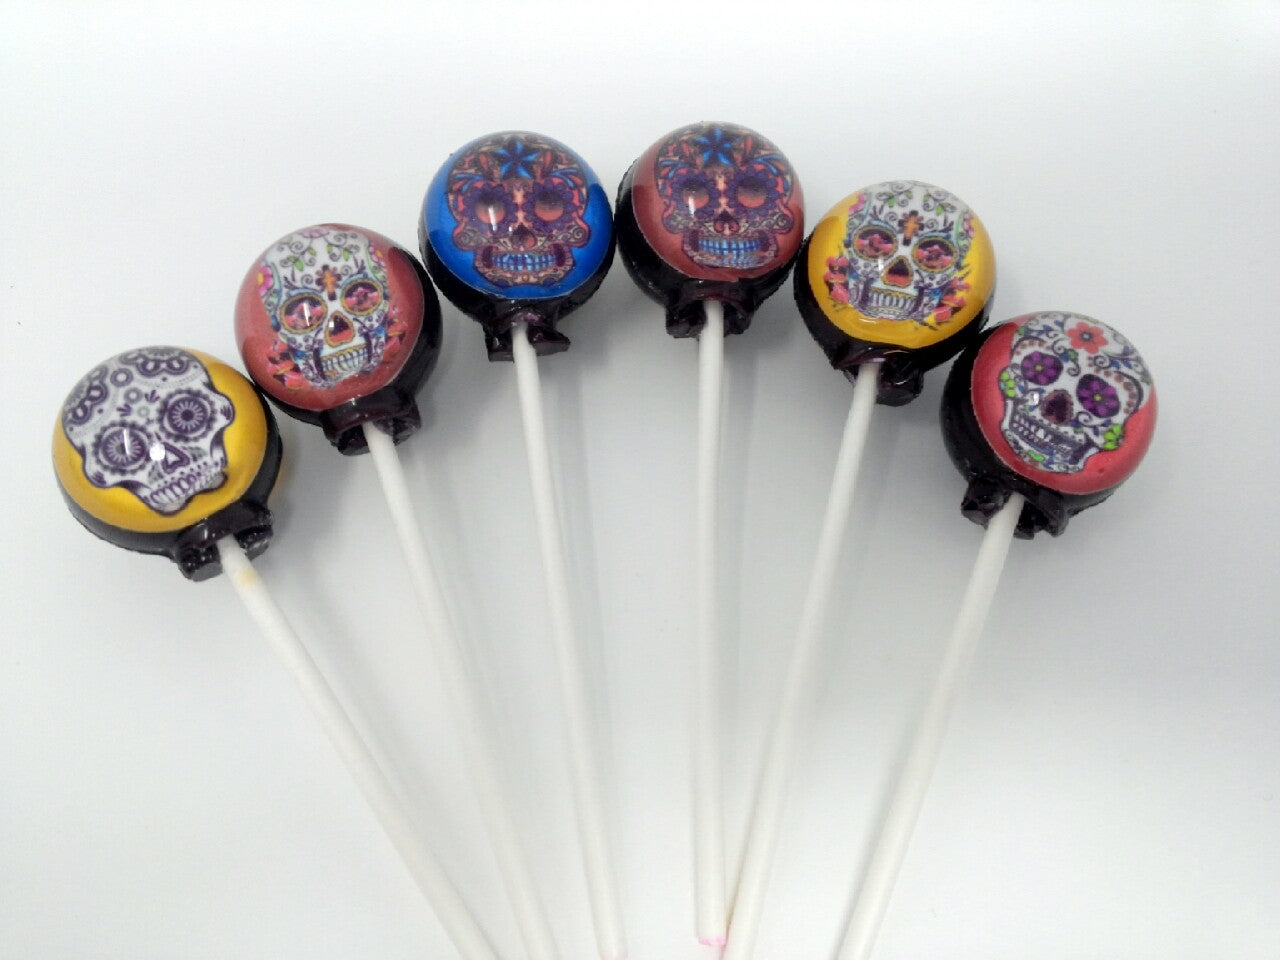 Dia de Los Muertos Sugar Skull Lollipops 6-piece set by I Want Candy!